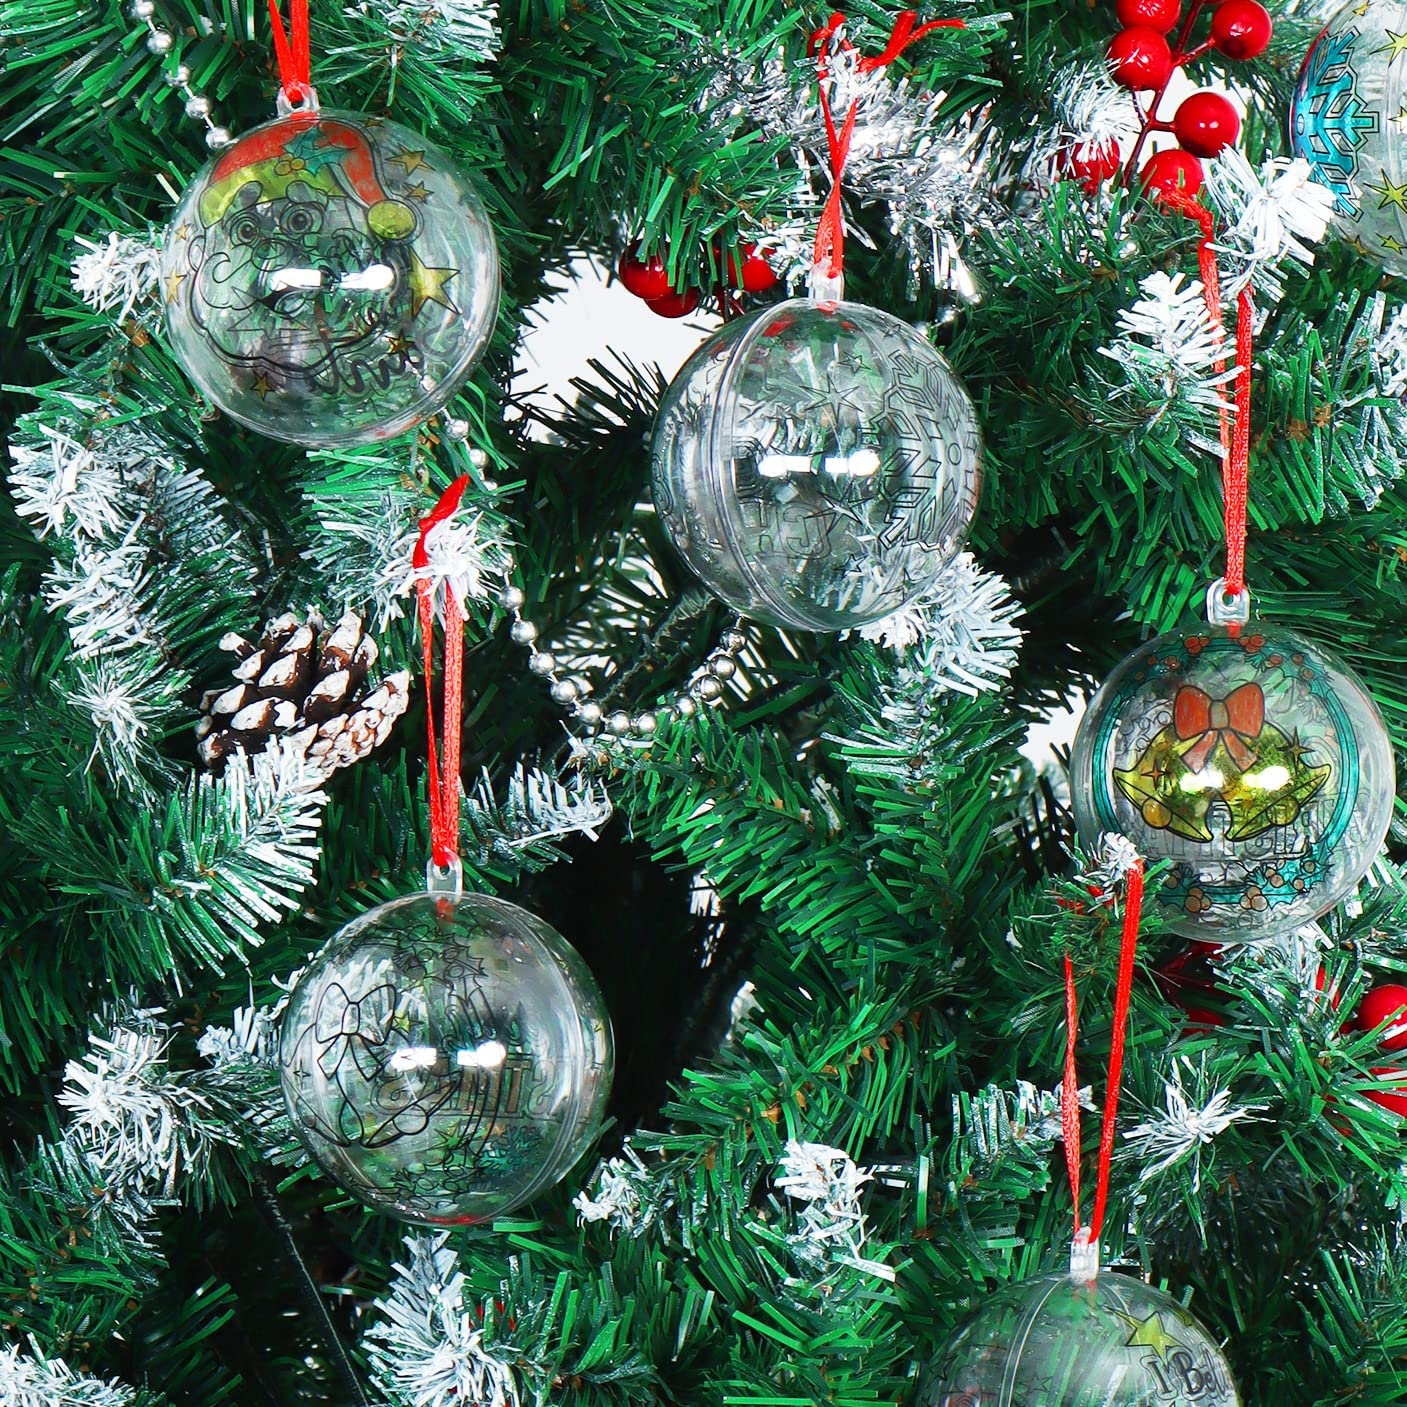 3.15'' Colorable Christmas Ornaments 18 Pcs